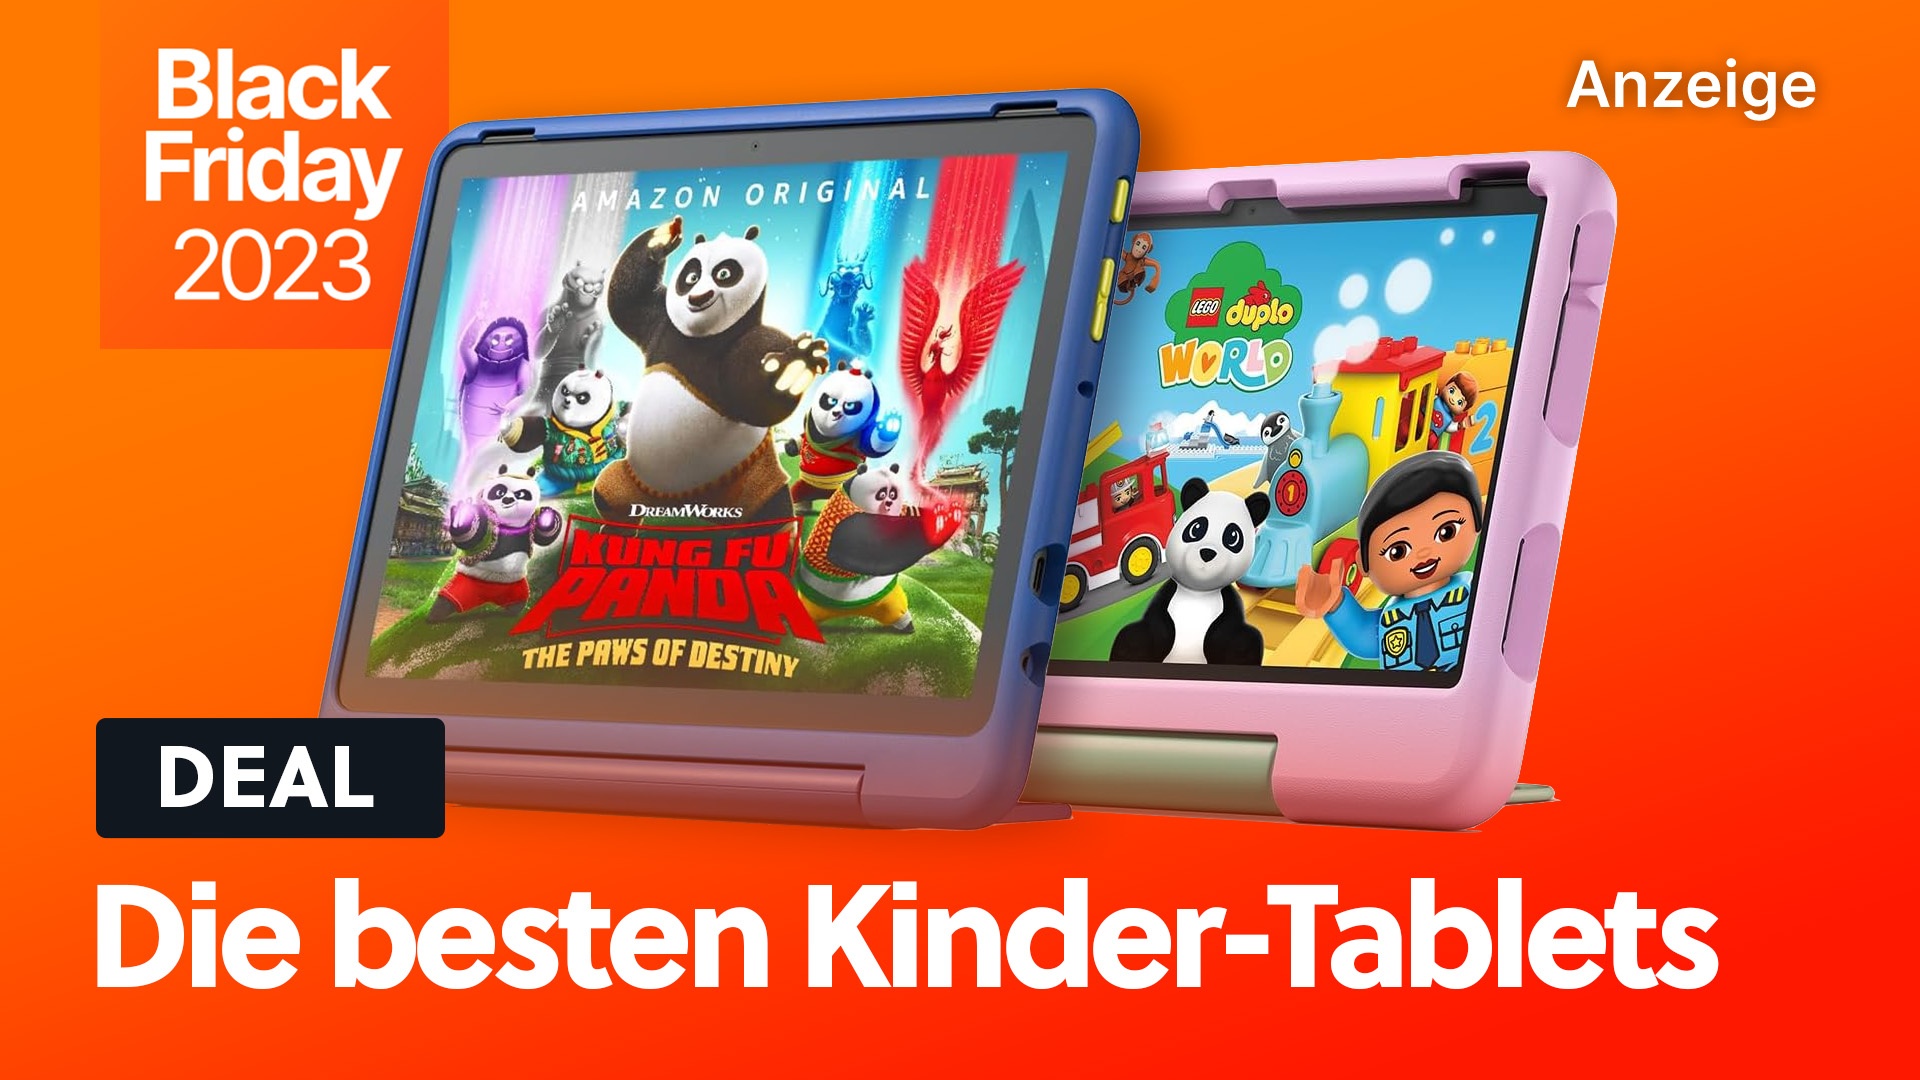 Die besten Tablets für Kinder bei Amazon: Starke 47% Rabatt zum Black Friday auf Fire HD Kids-Tablets